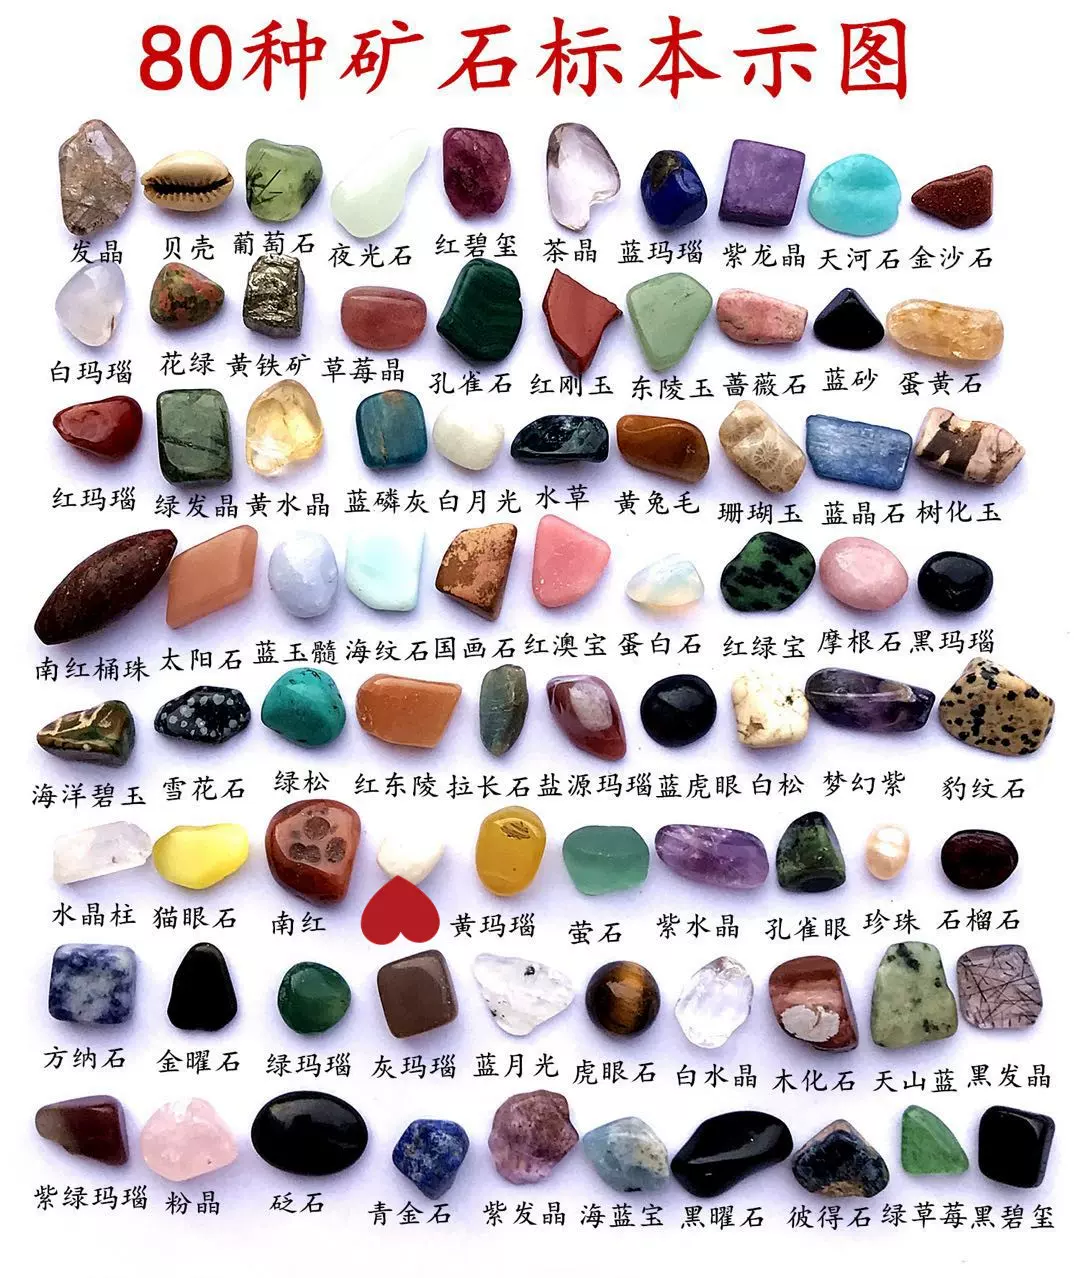 天然水晶原石化石瑪瑙礦石標本套裝教學迷你精緻碎石禮盒世界礦物-Taobao